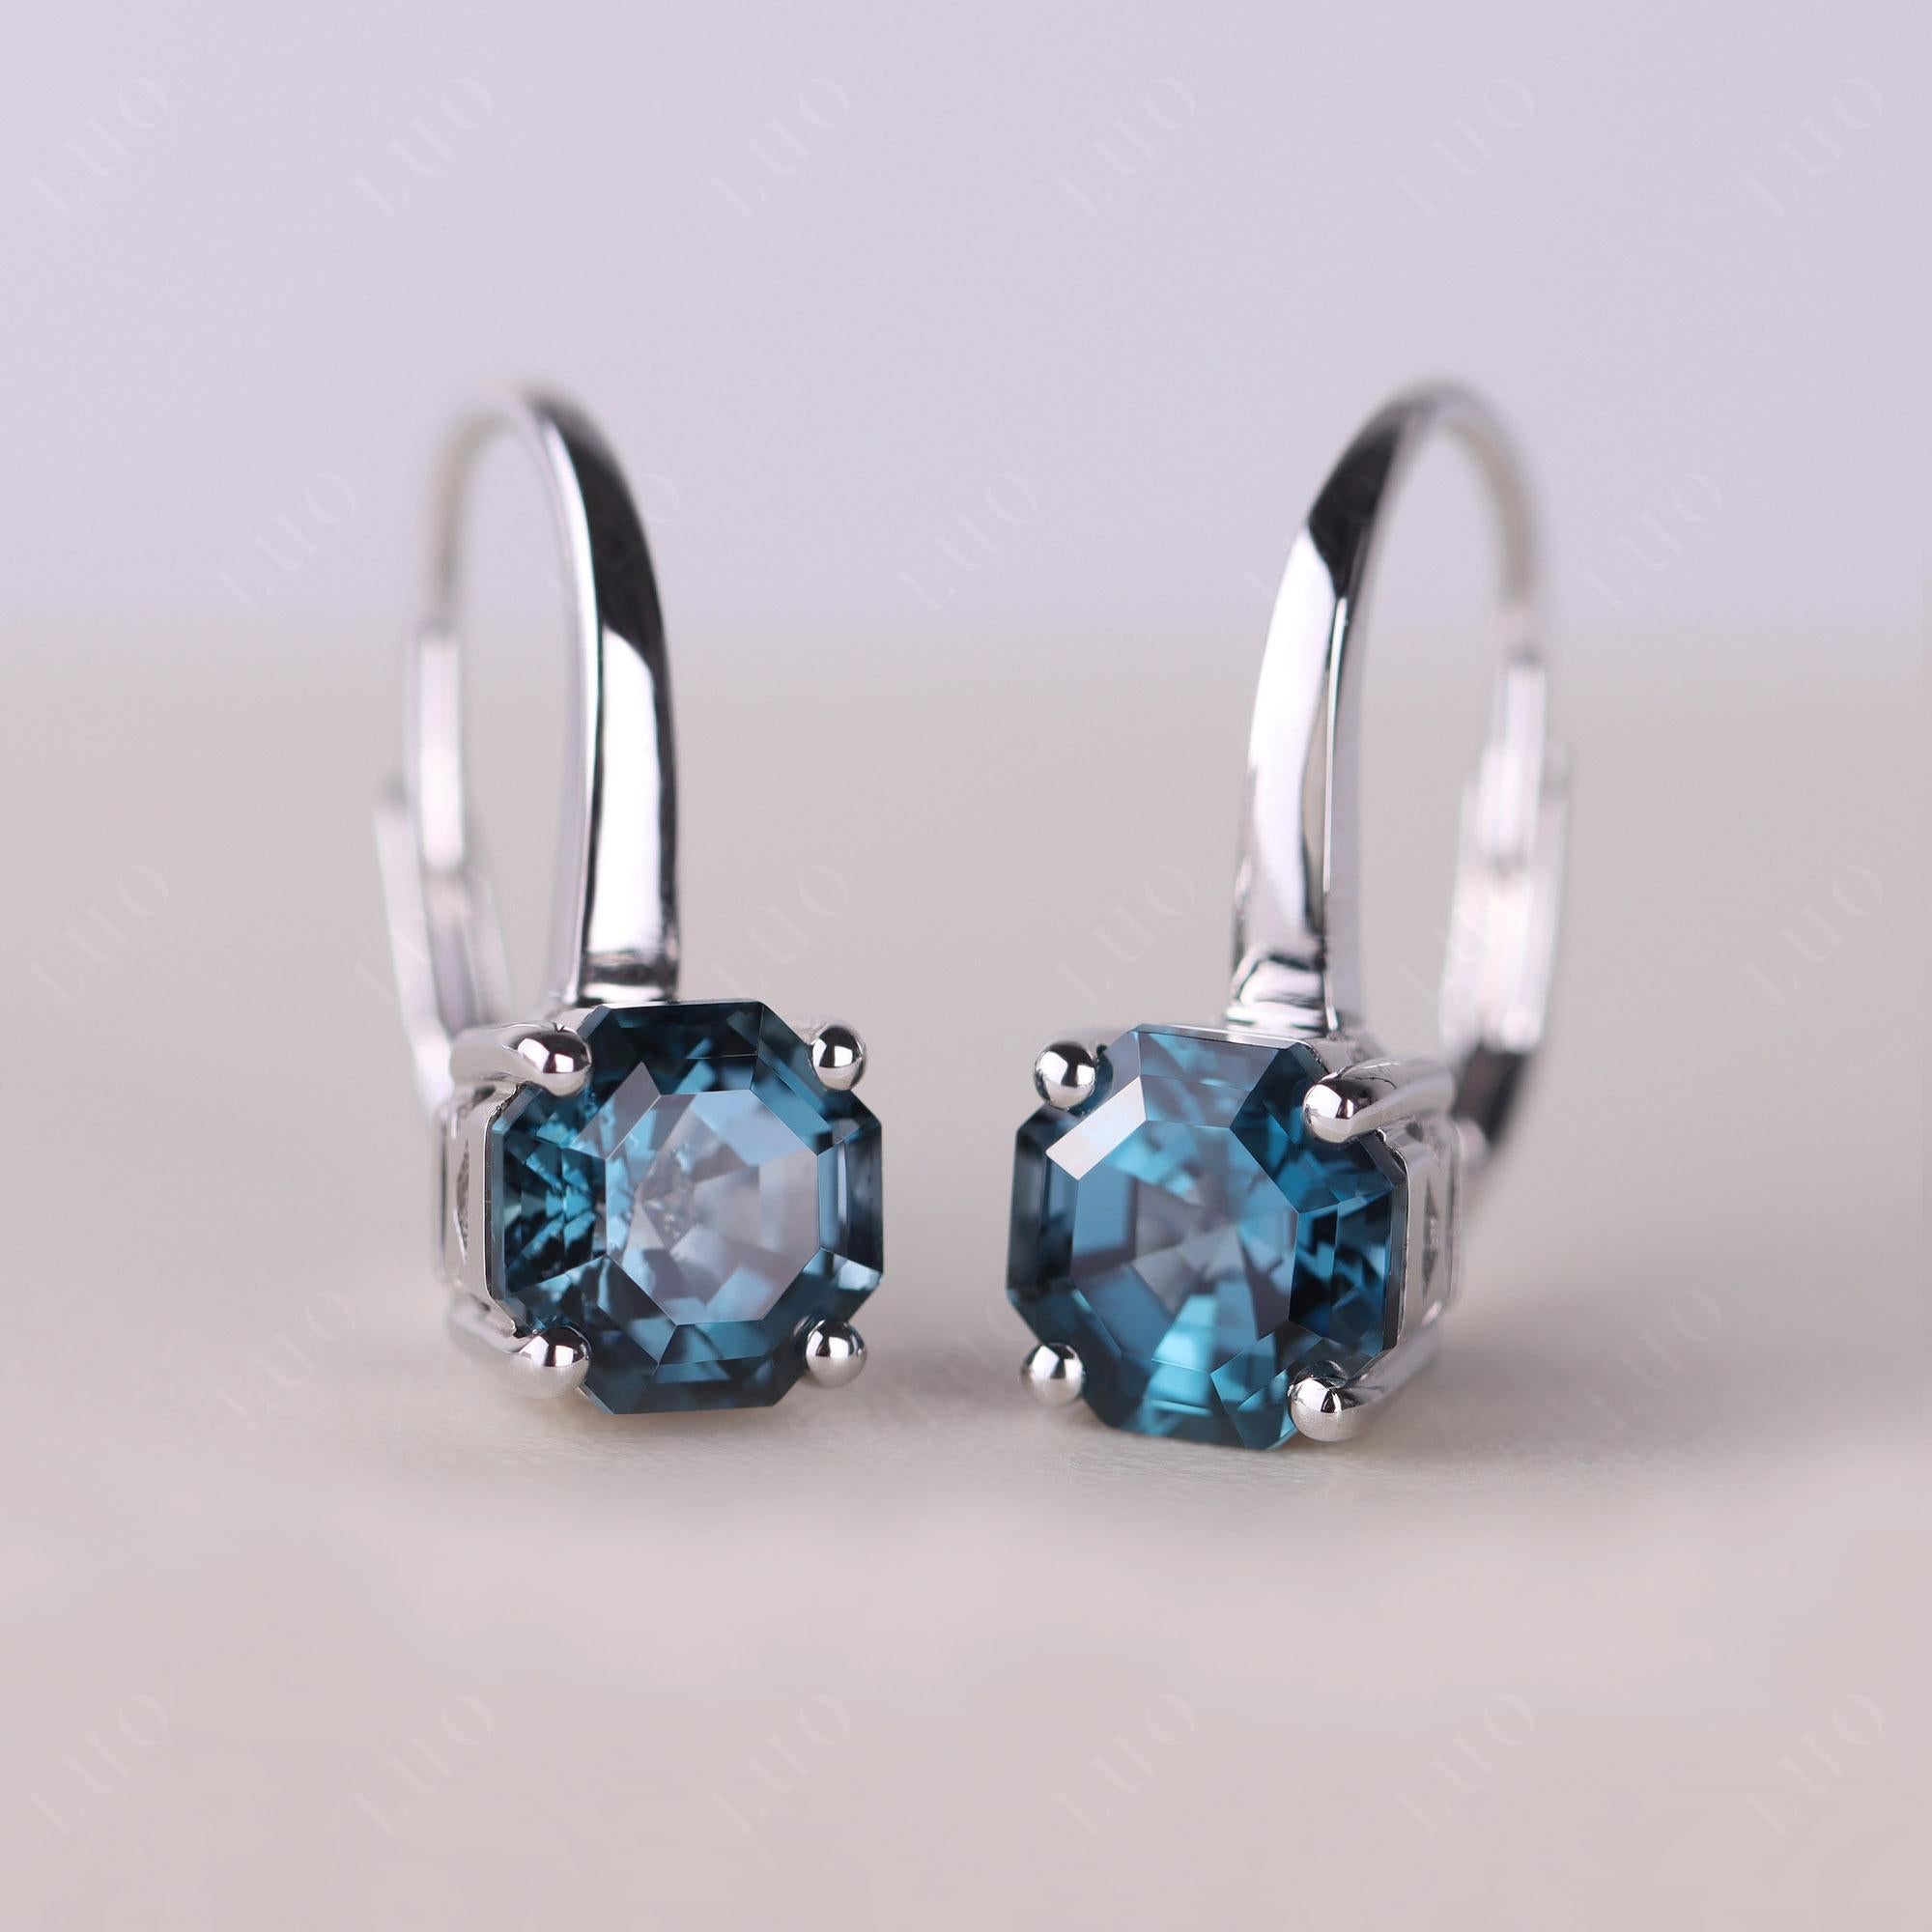 Octagon Cut London Blue Topaz Leverback Earrings - LUO Jewelry